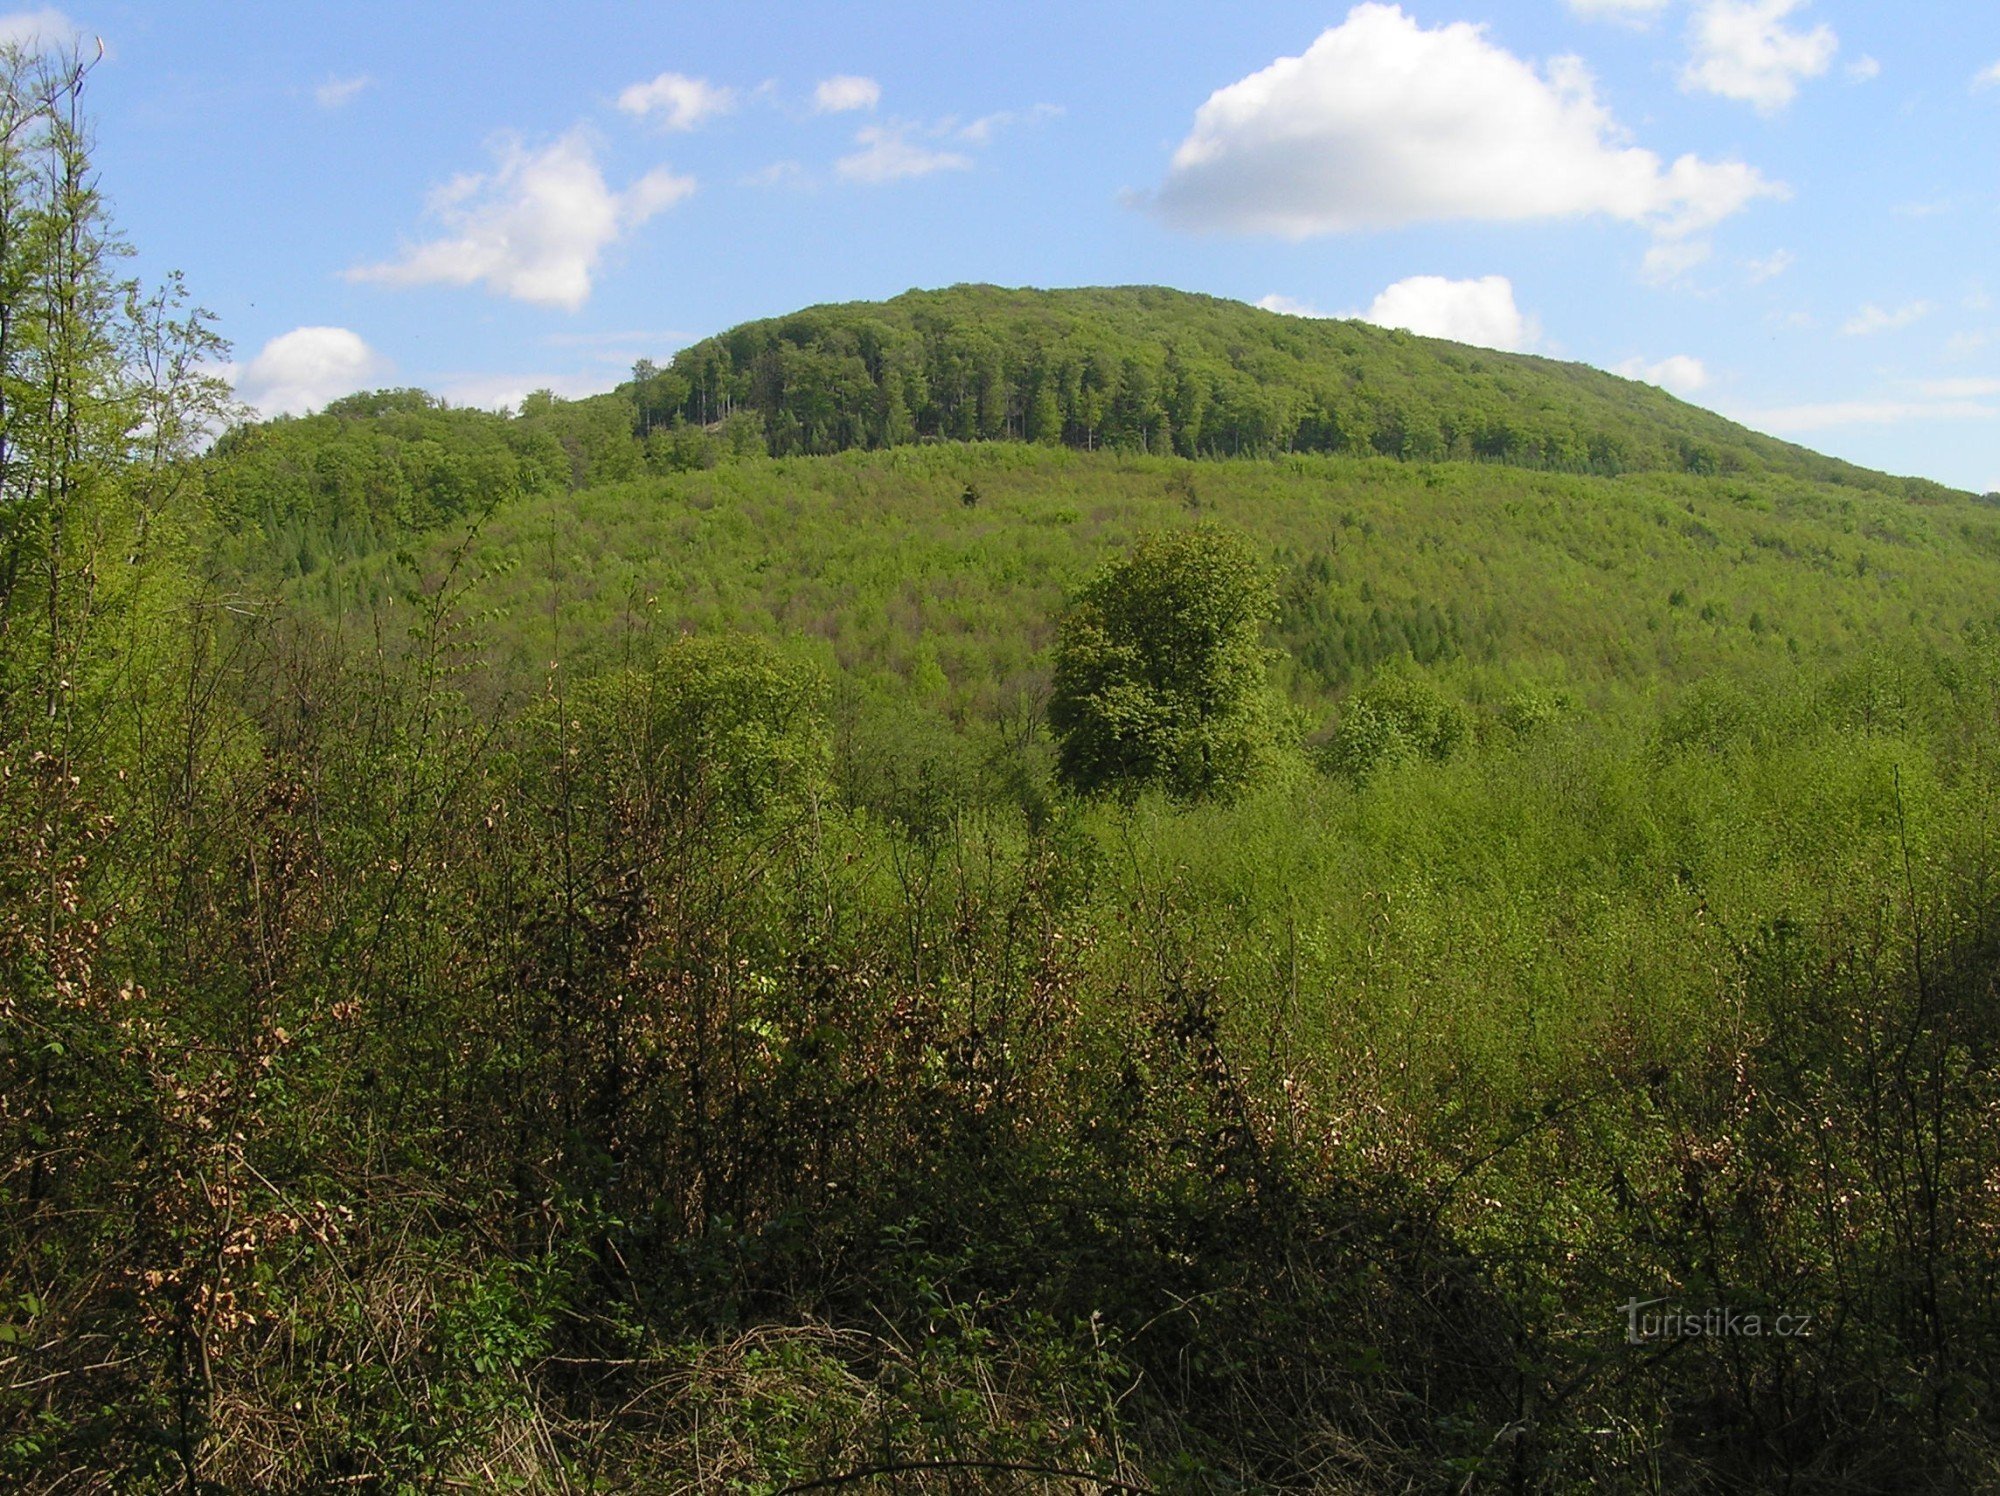 Holý kopec - hradiště stávalo na jeho vrcholu (duben 2009)